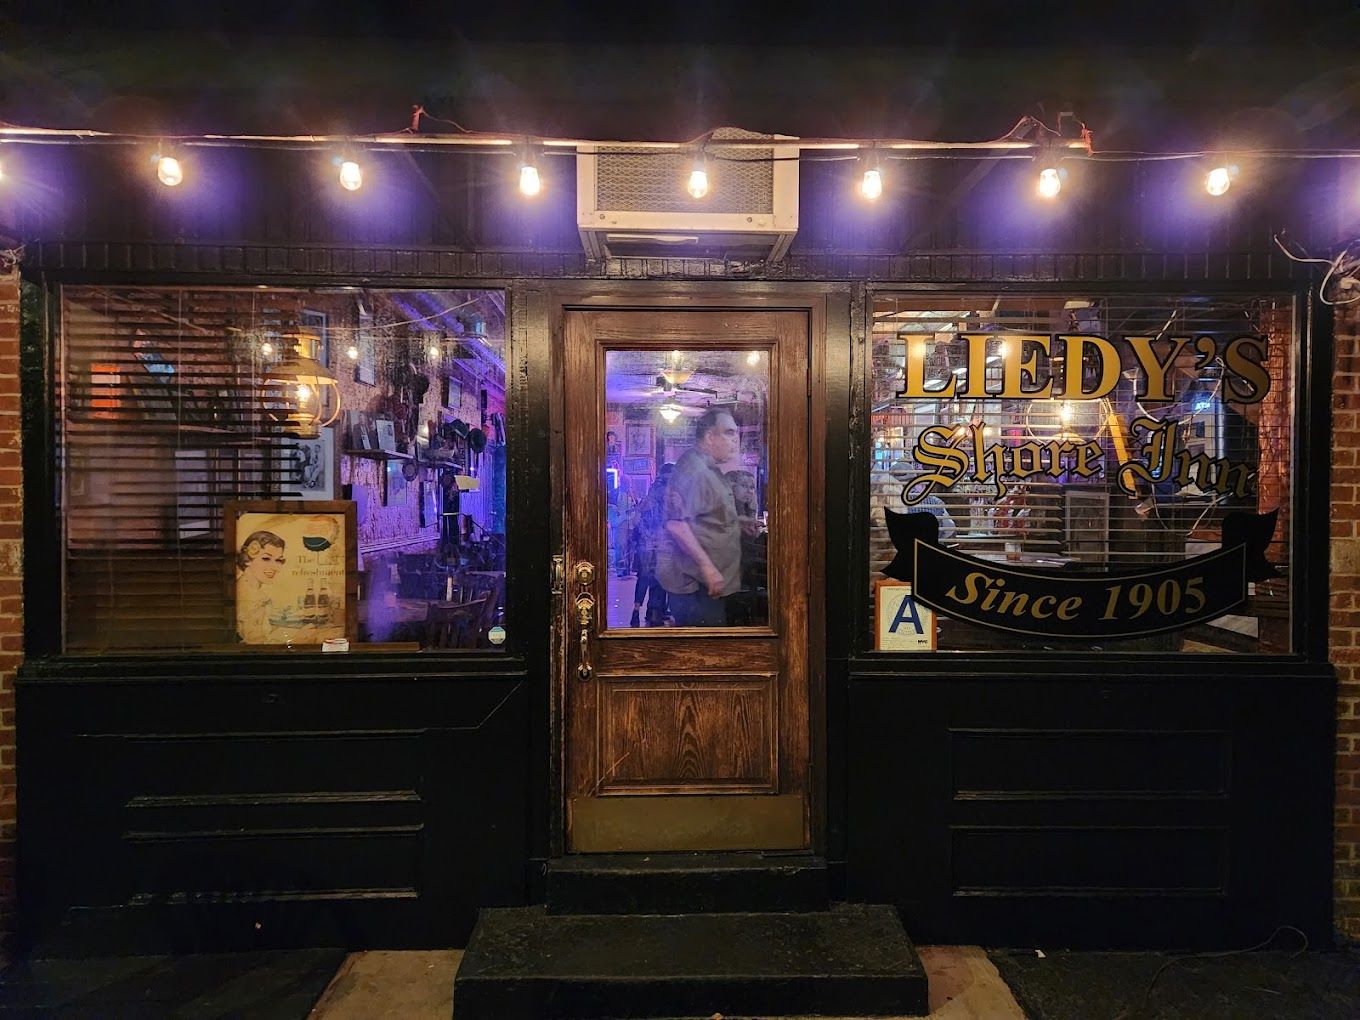 Liedy's Shore Inn